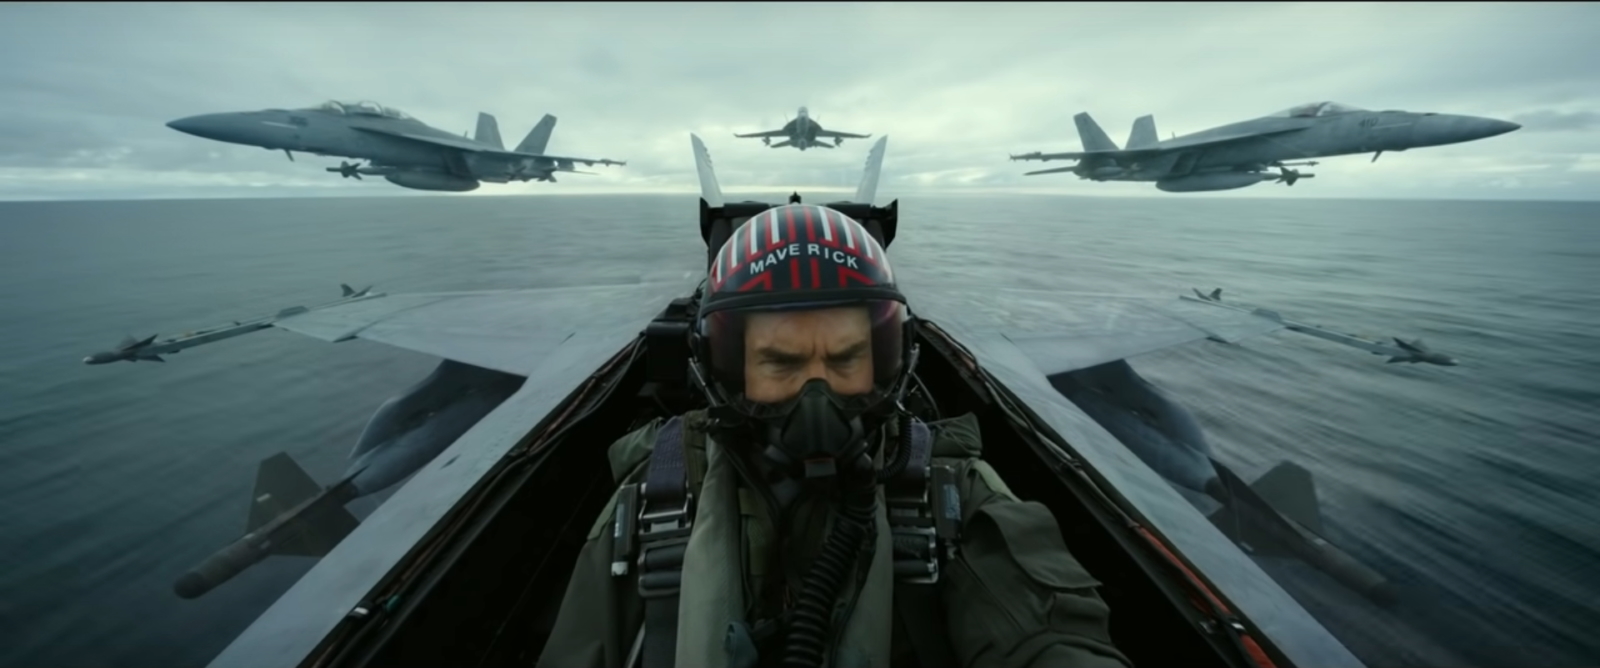 Pour le tournage de Top Gun 2, les pilotes des F-18 ont effectué des vols dans des configurations bien plus serrées qu’ils ne le font en conditions réelles. © Paramount Pictures